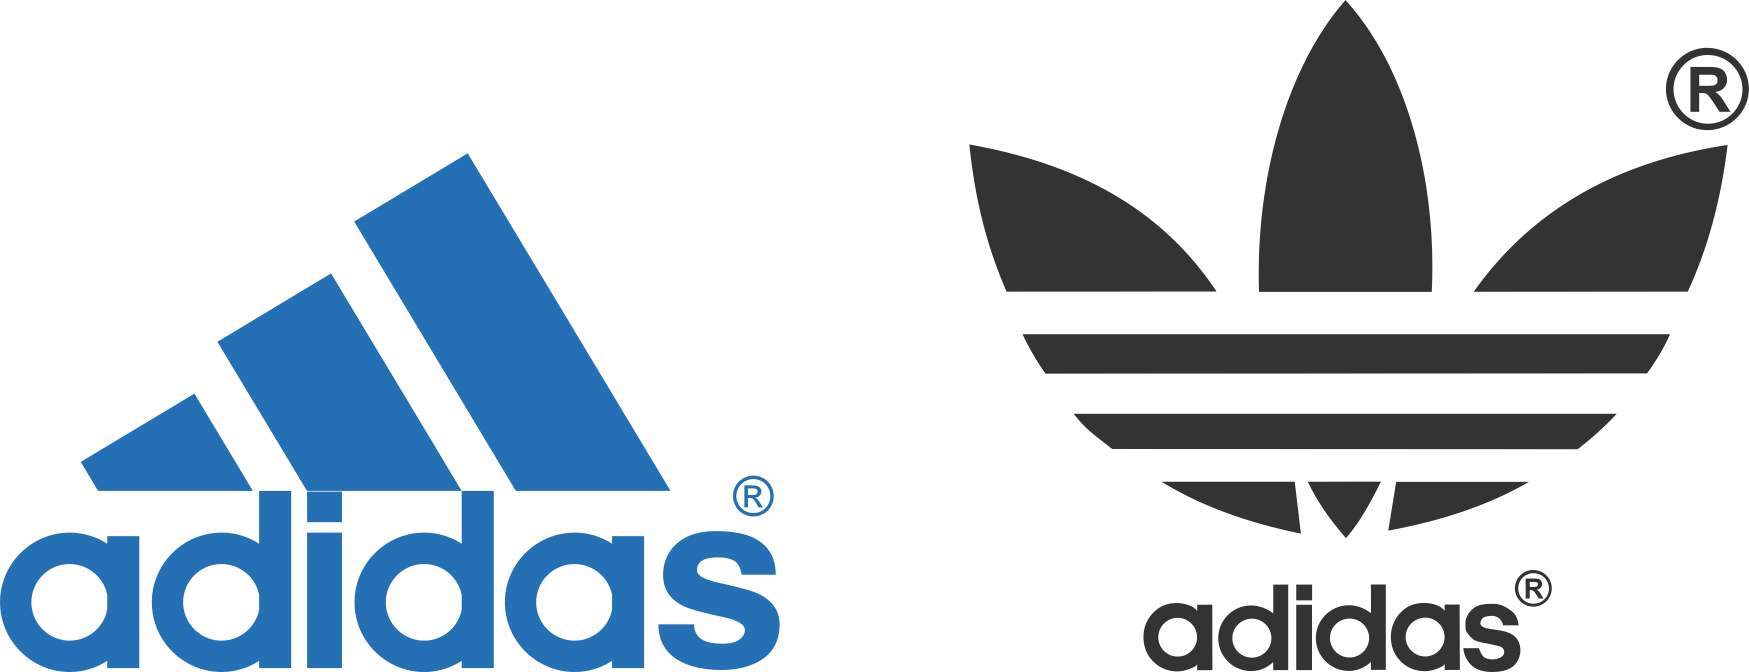 Tải logo Adidas dưới định dạng PNG miễn phí ở đâu? 
